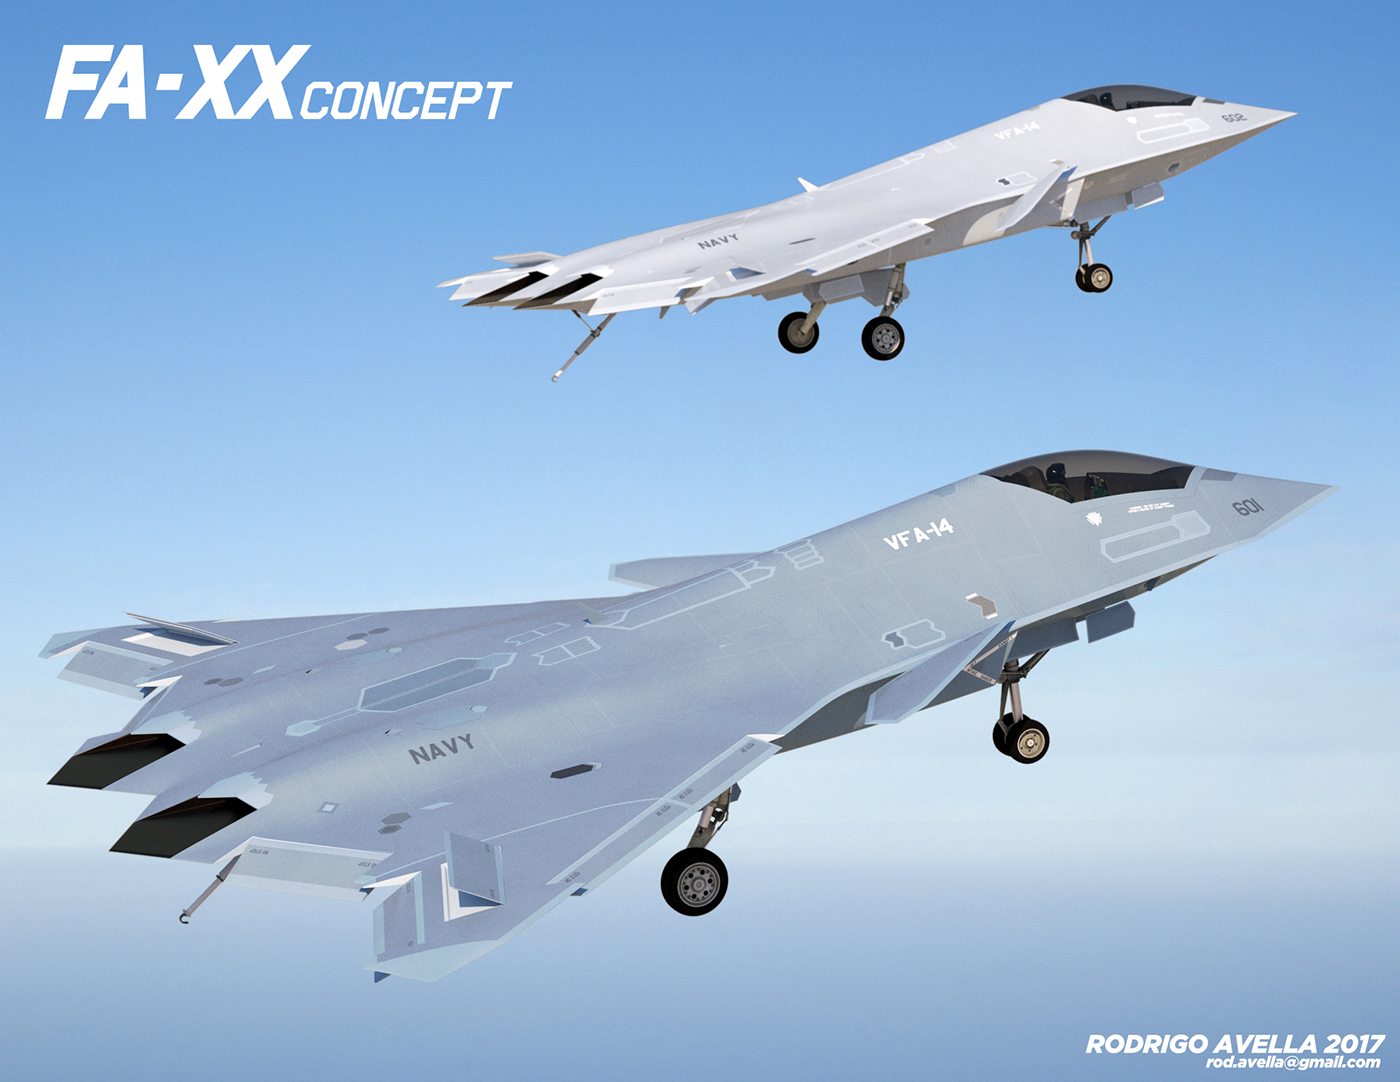 6th air aircraft future FX jet stealth